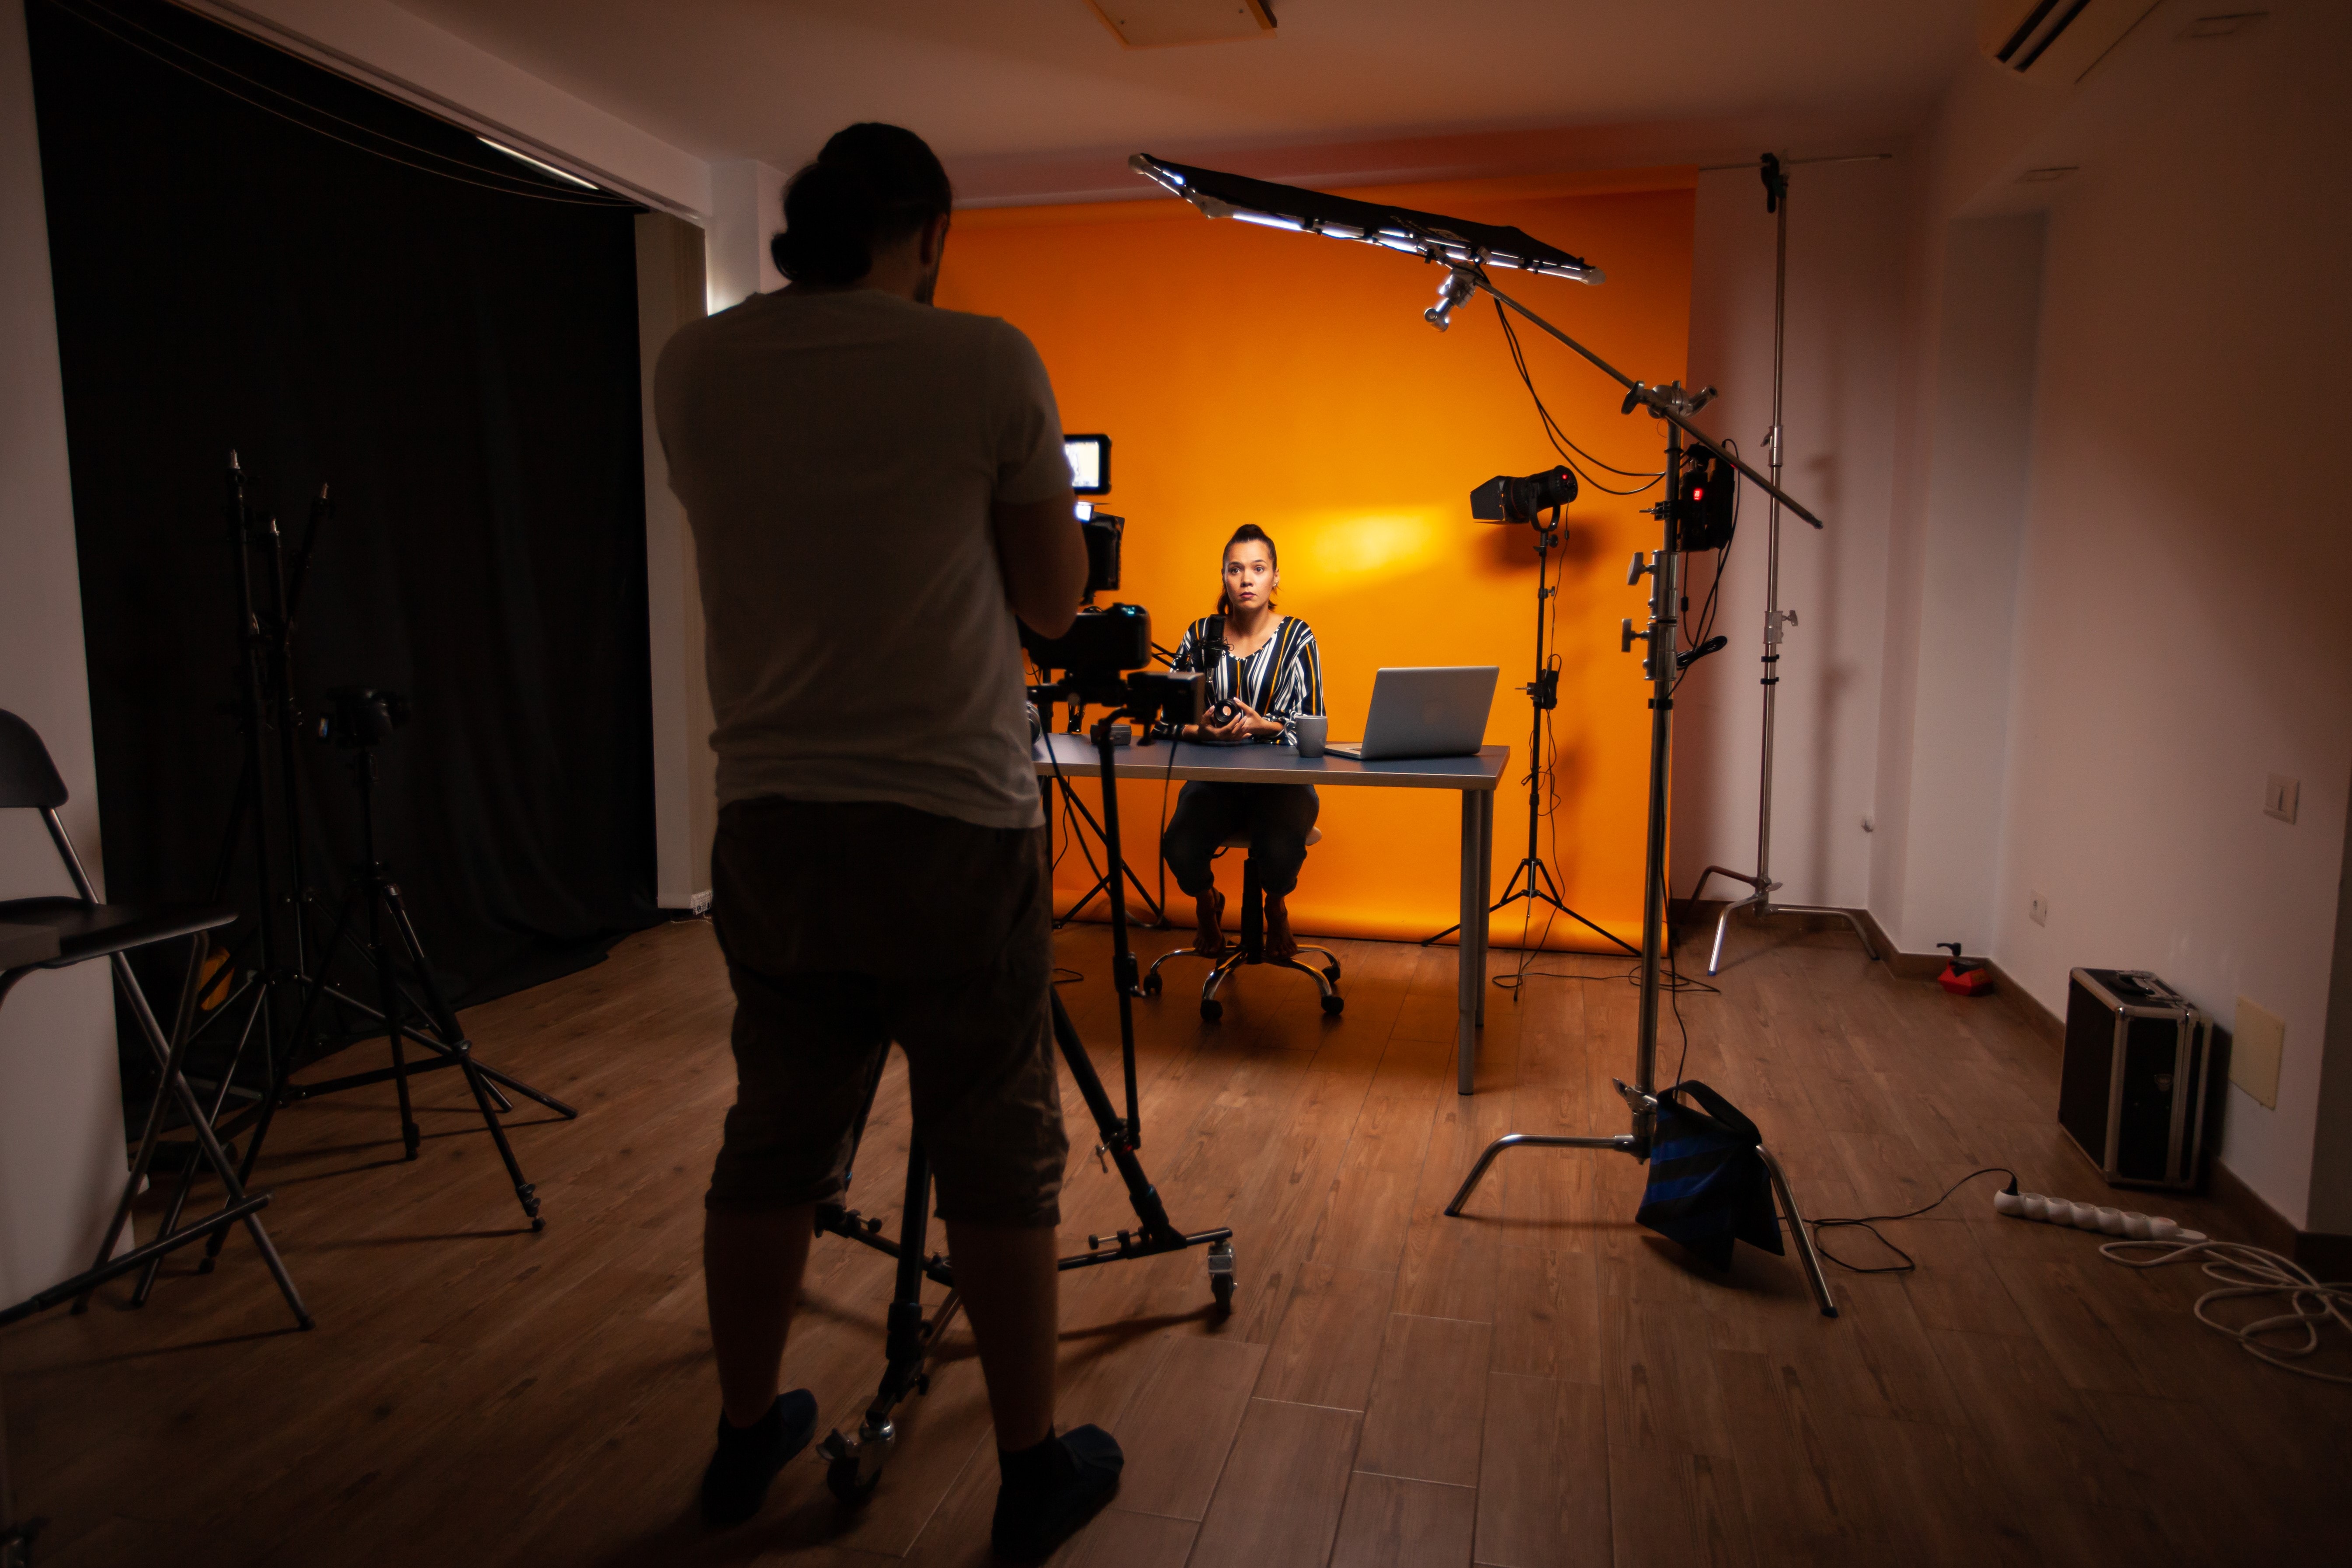 En stående person filmar en annan person som sitter framför en orange vägg